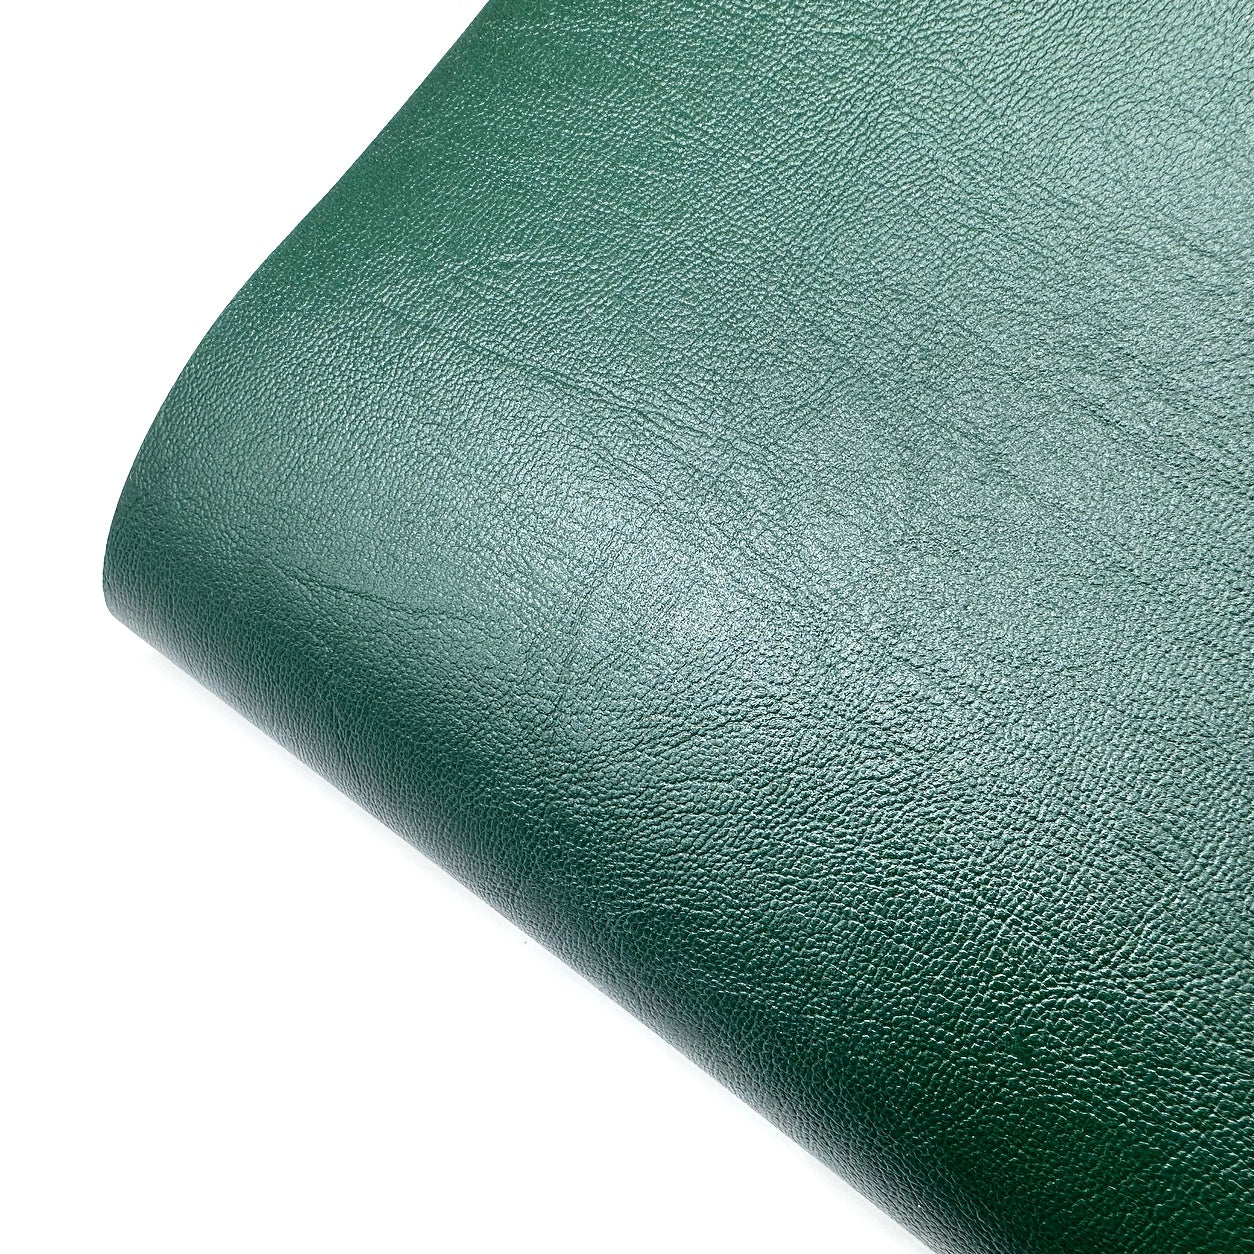 Bottle Green Core Colour Premium Faux Leather Fabric Sheets